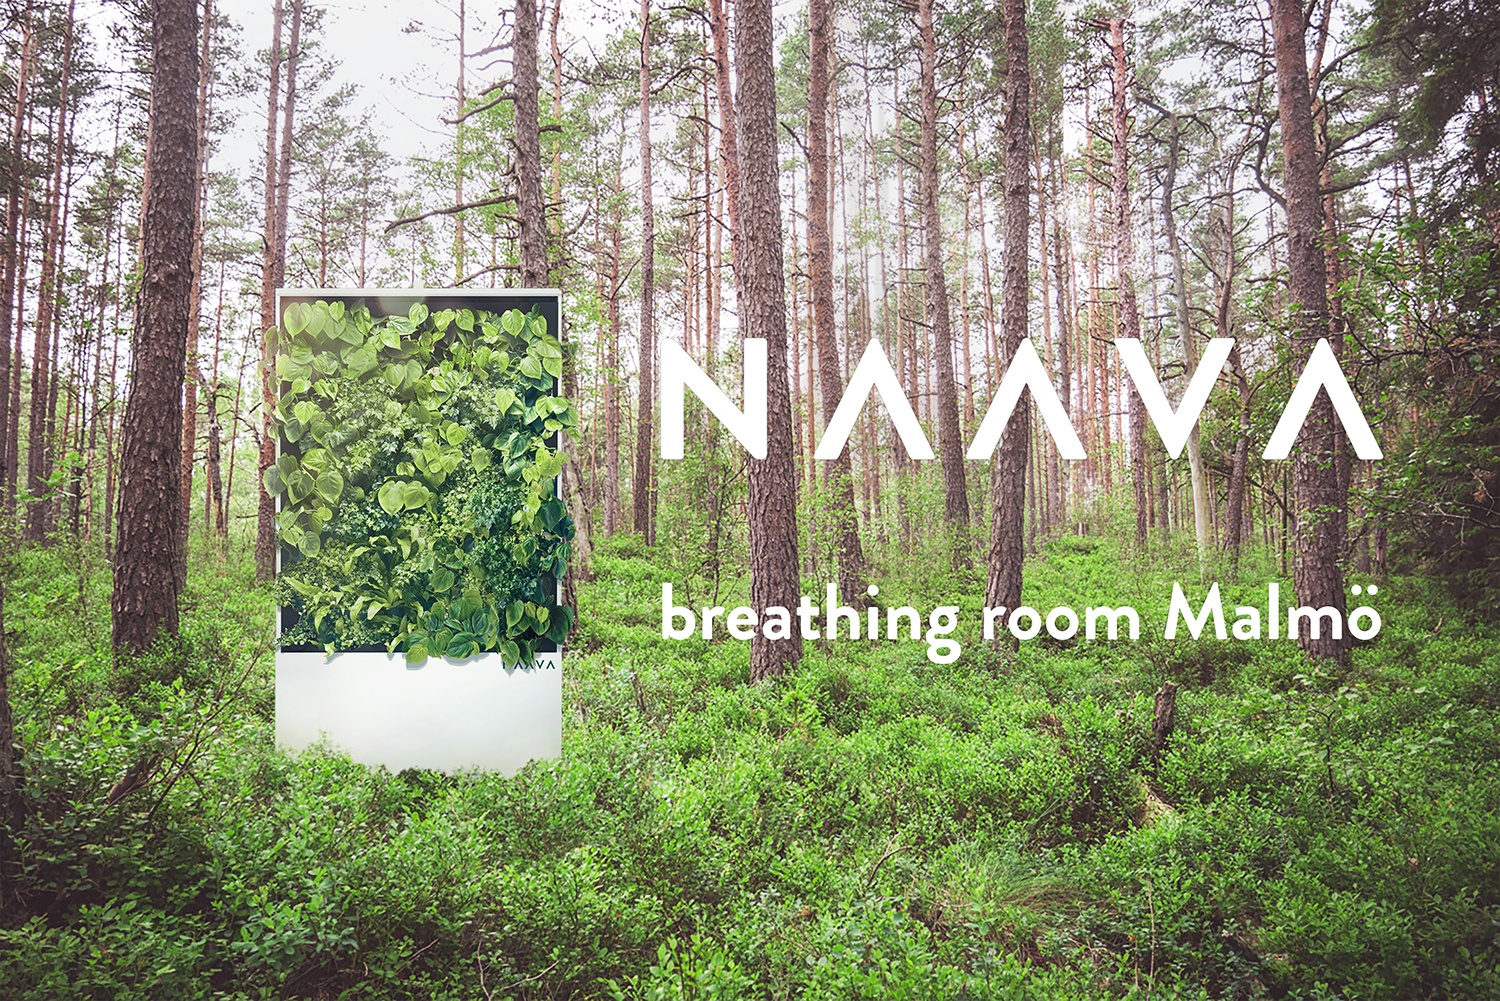 Malmö breathingroom_web-2